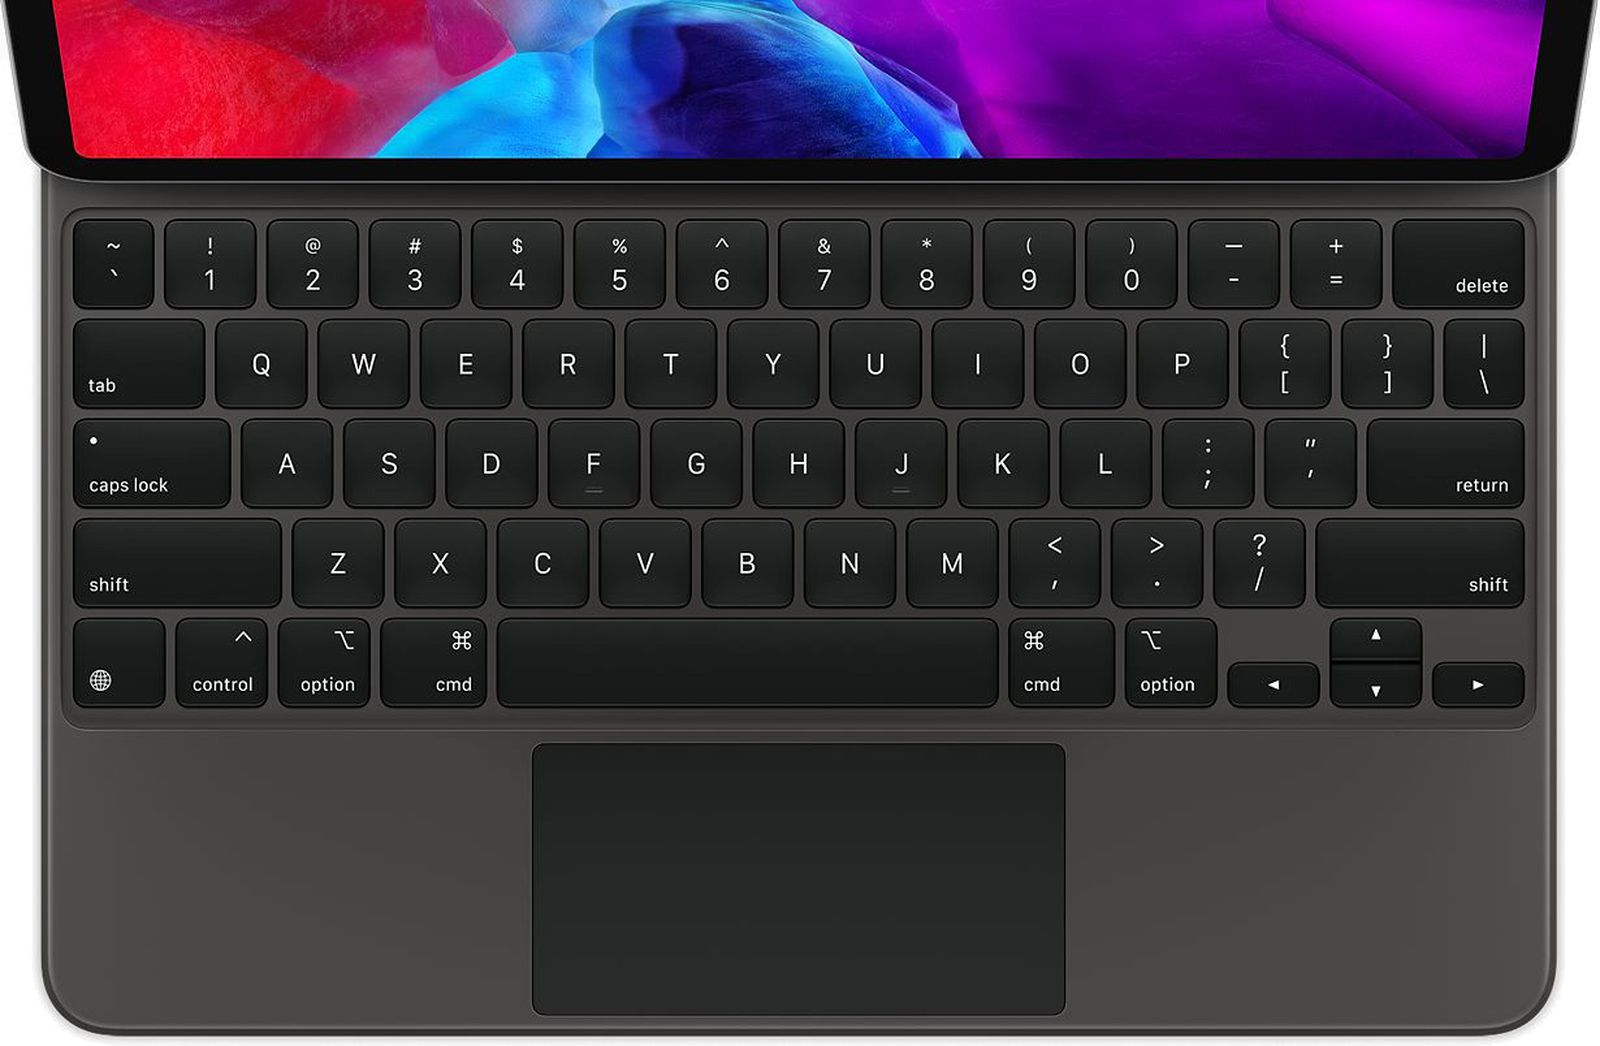 external keyboard like the new macbook pro keyboard